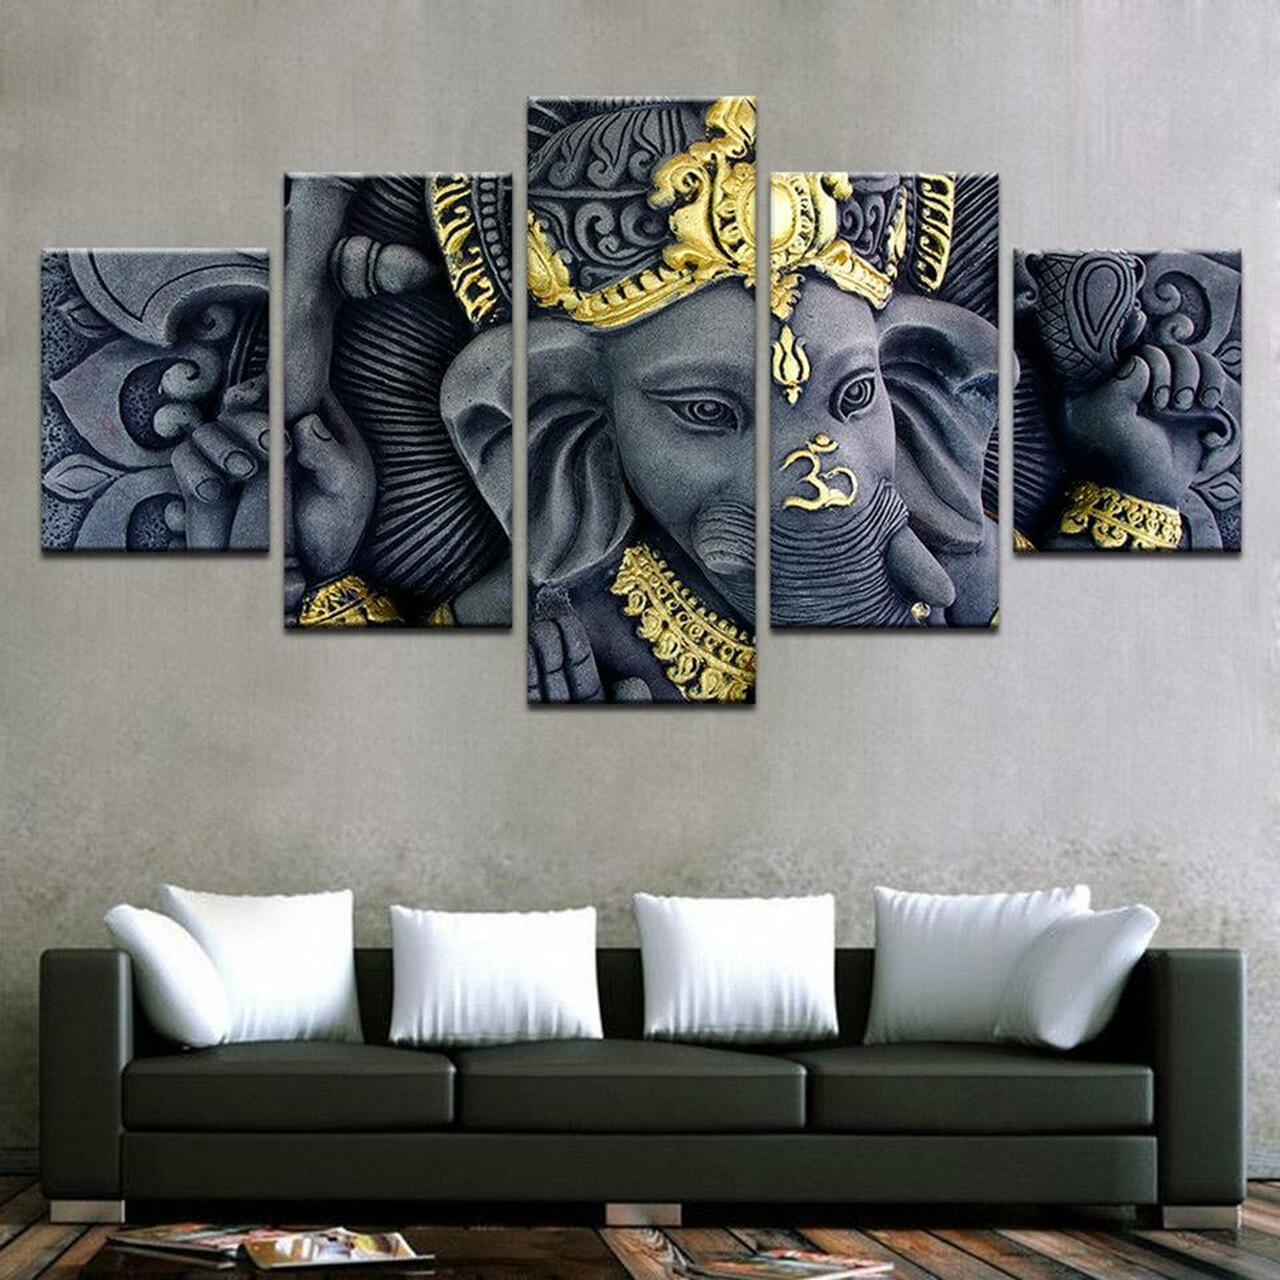 OM Ganesha 5 Piece Canvas Art Wall Decor